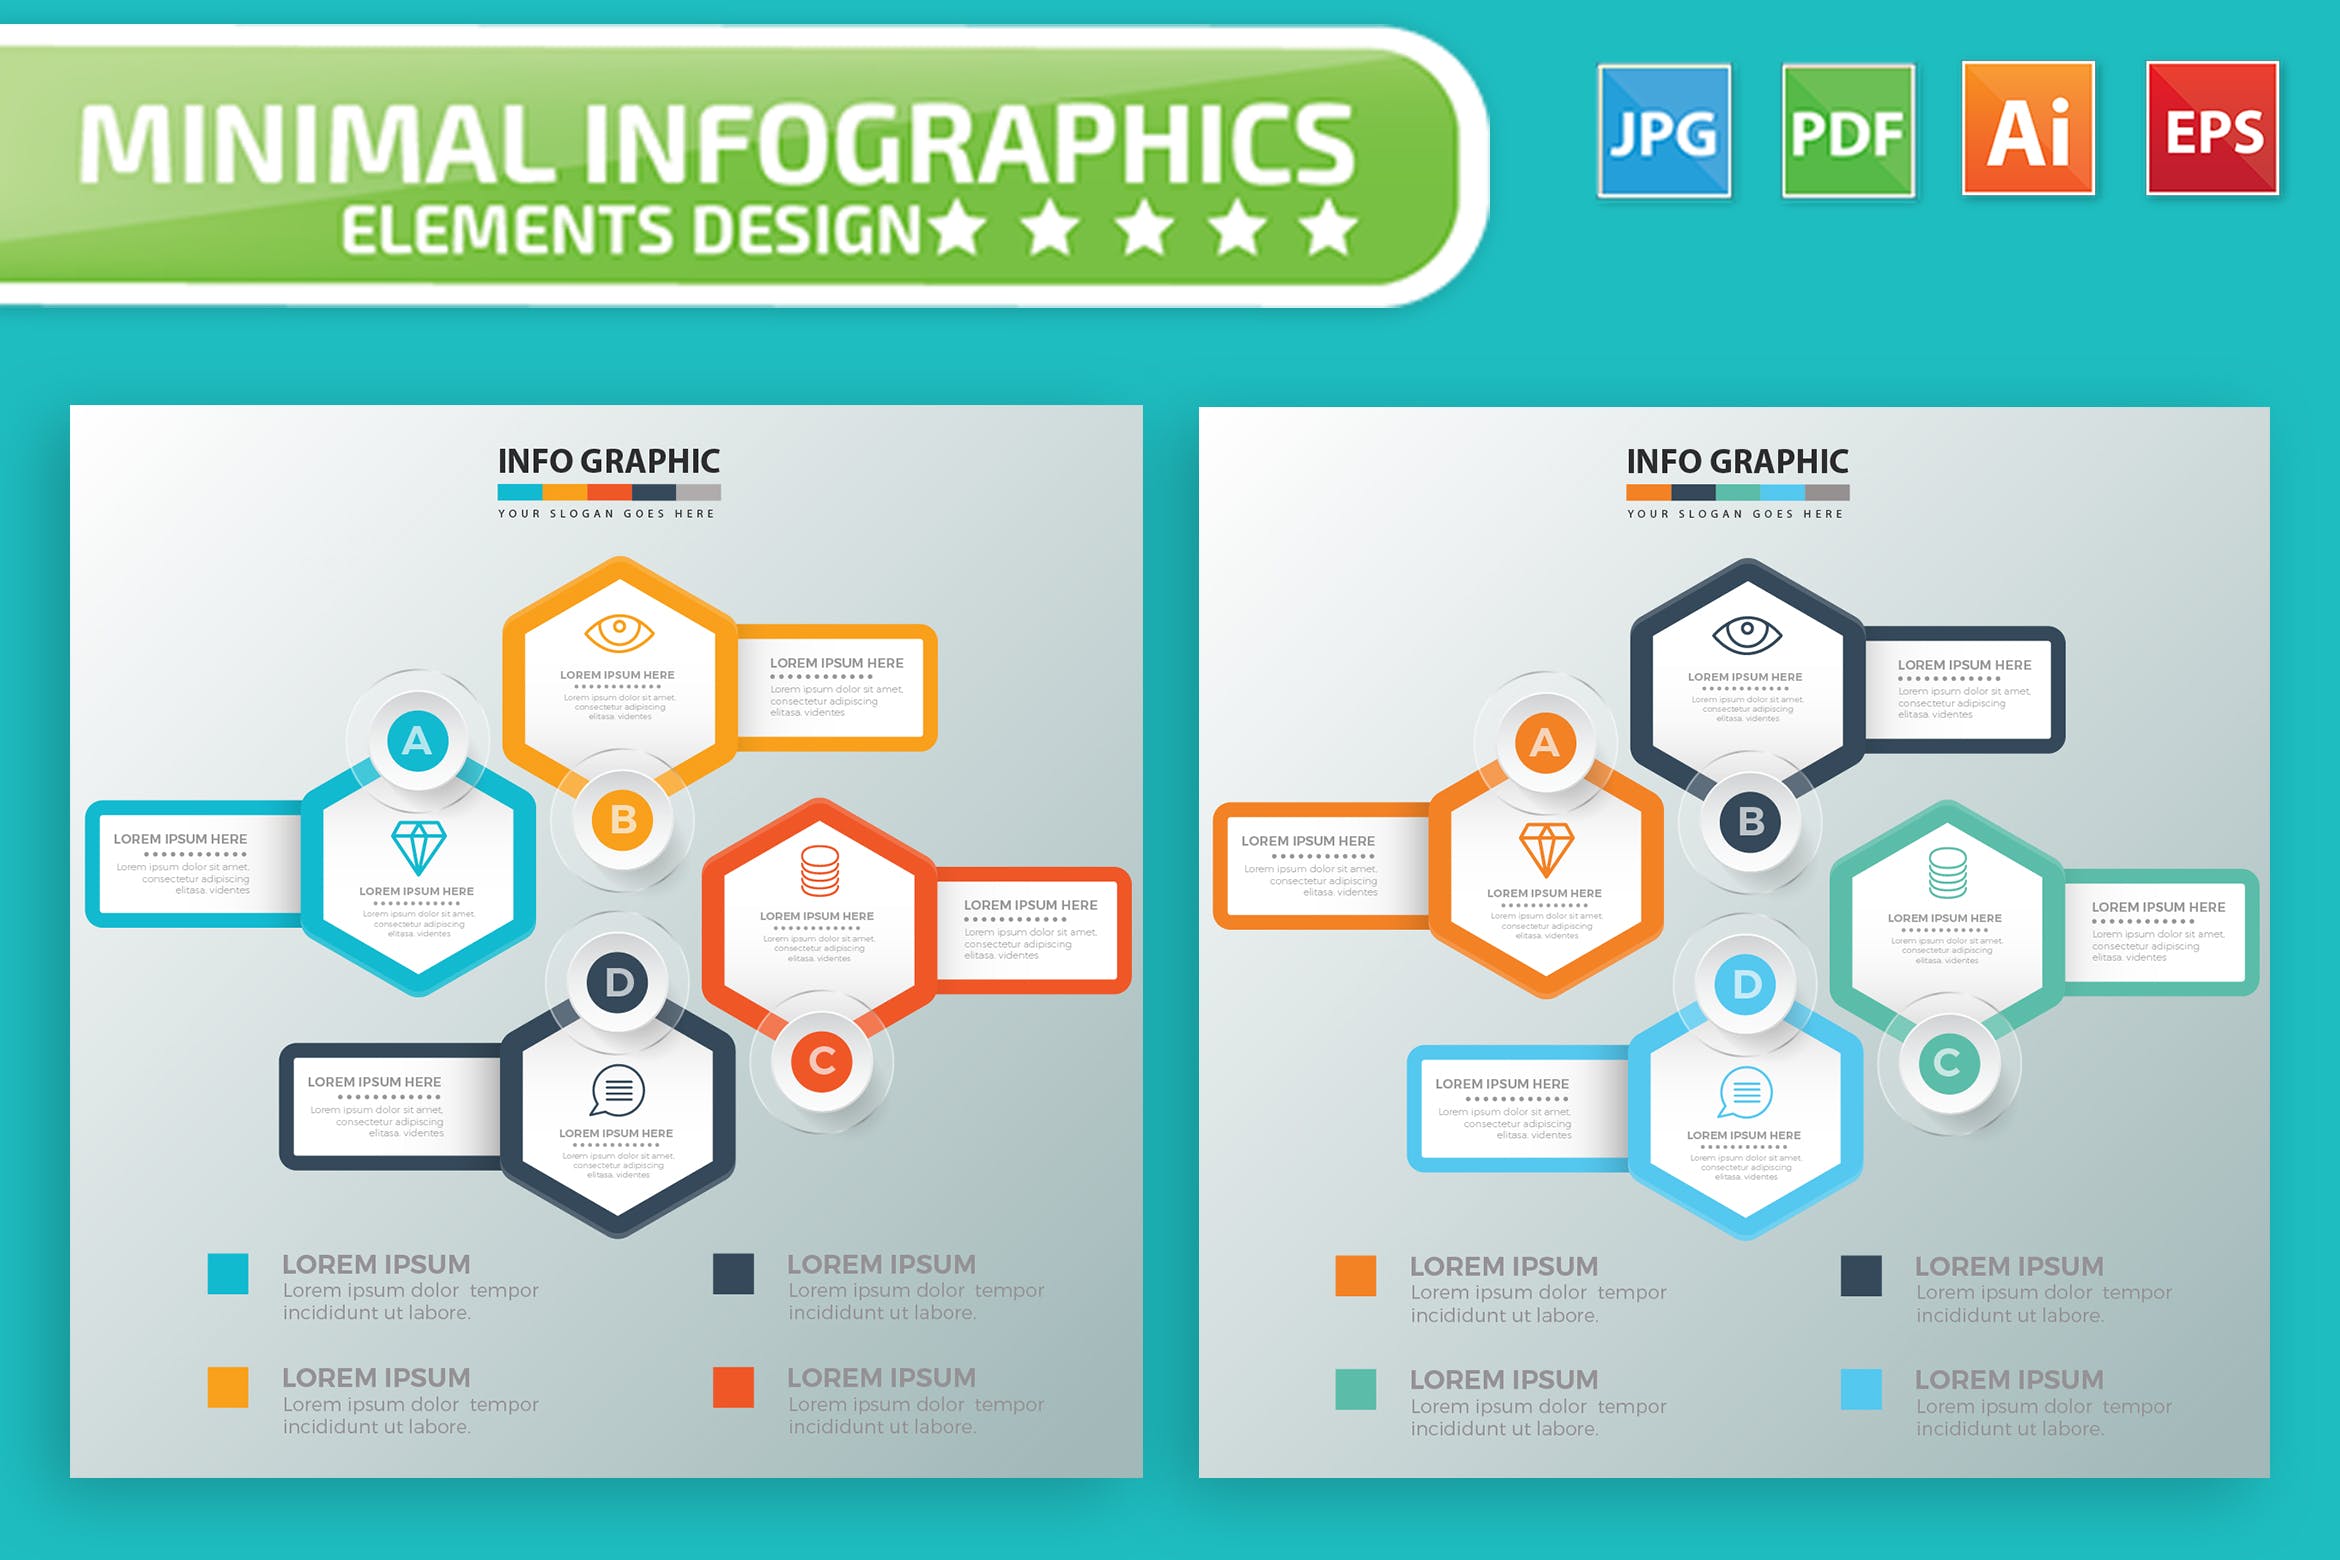 要点说明/重要特征信息图表矢量图形16素材精选素材v7 Infographic Elements Design插图